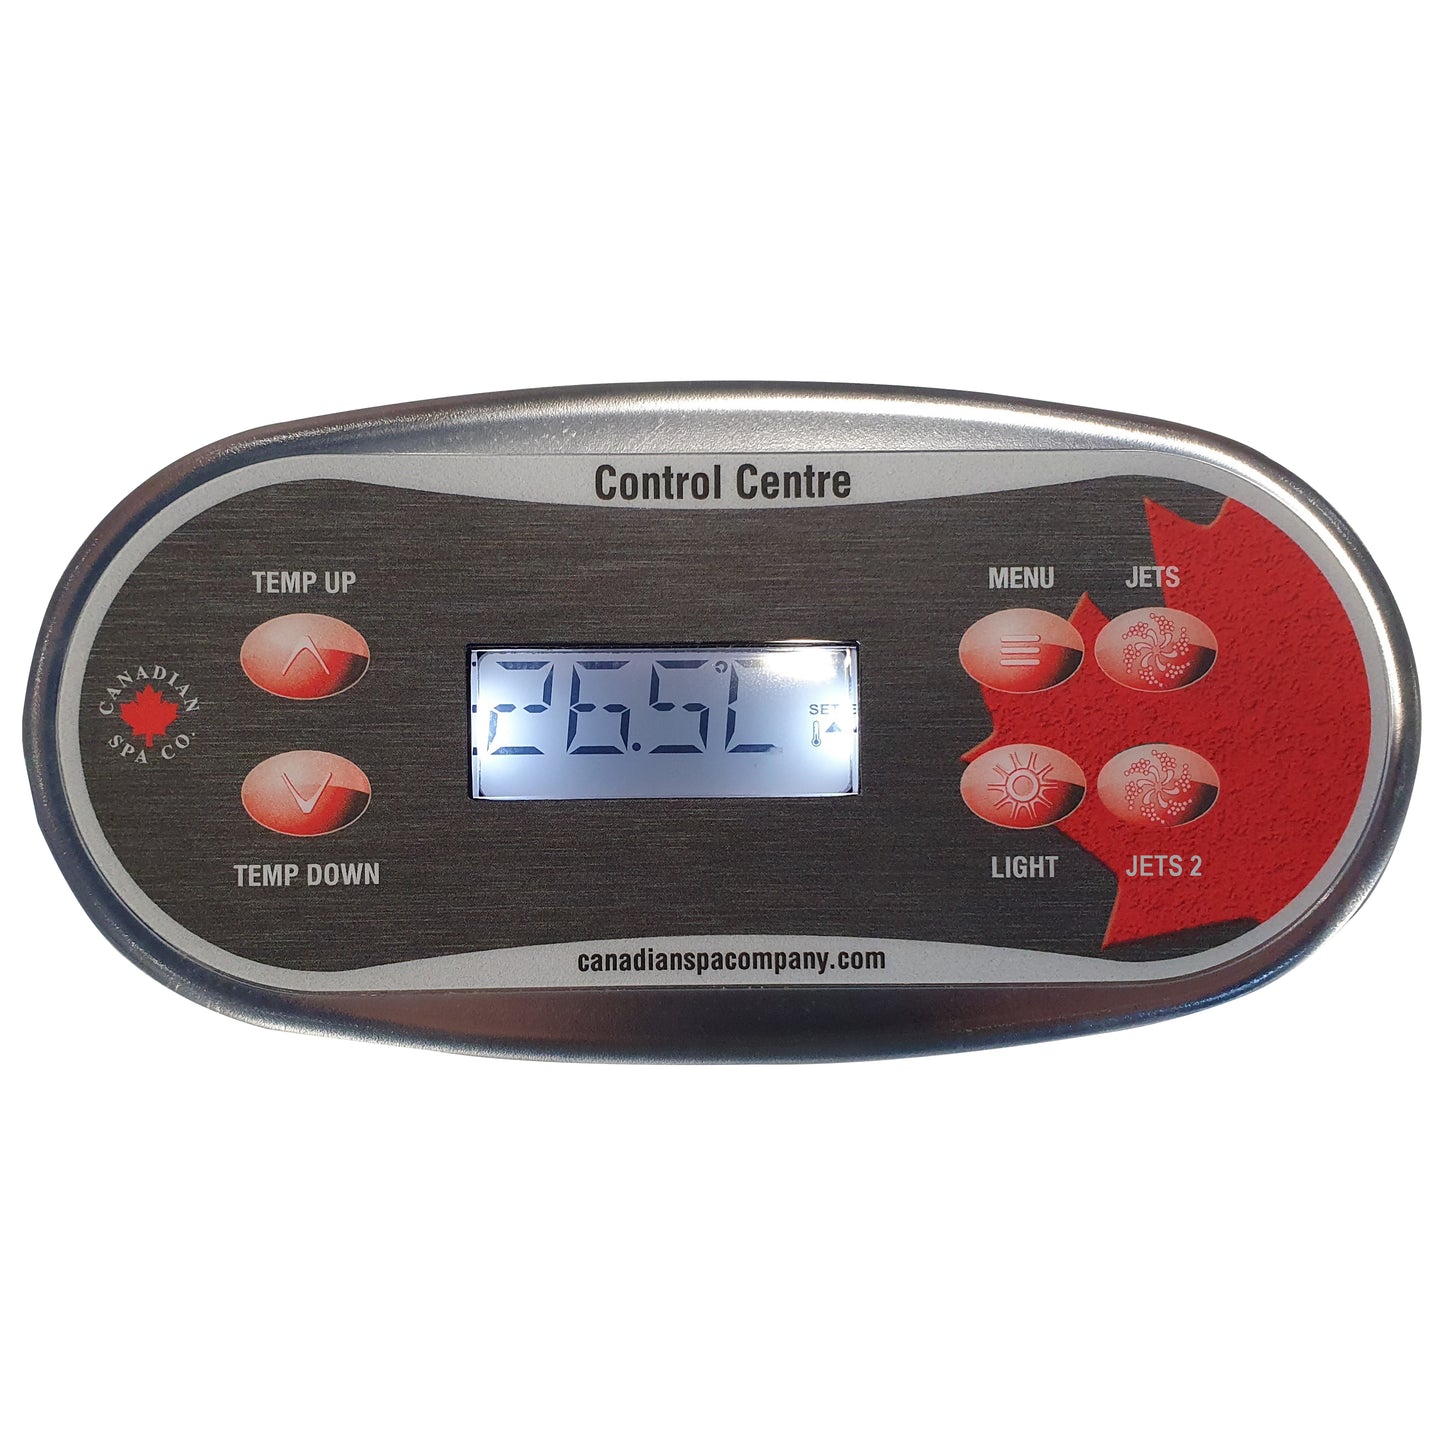 Canadian Spa Company_KK-11155_Balboa TP500 Topside Control 2 pump label_Hot Tubs